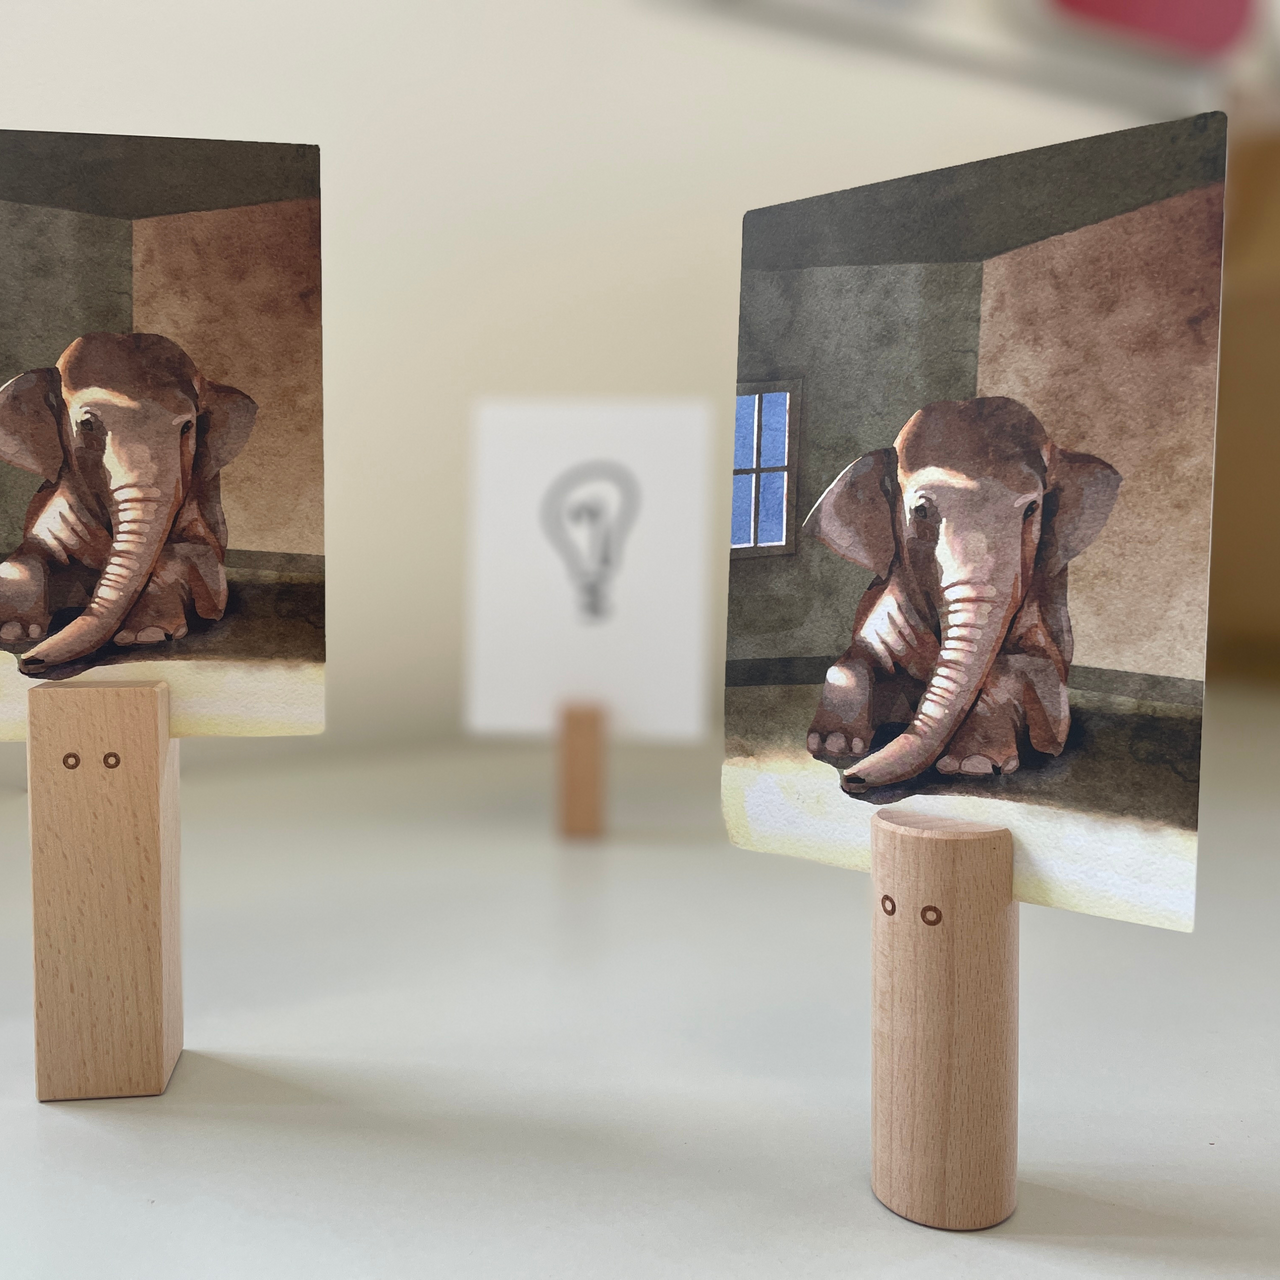  El elefante en la habitación - tarjeta de entrenamiento